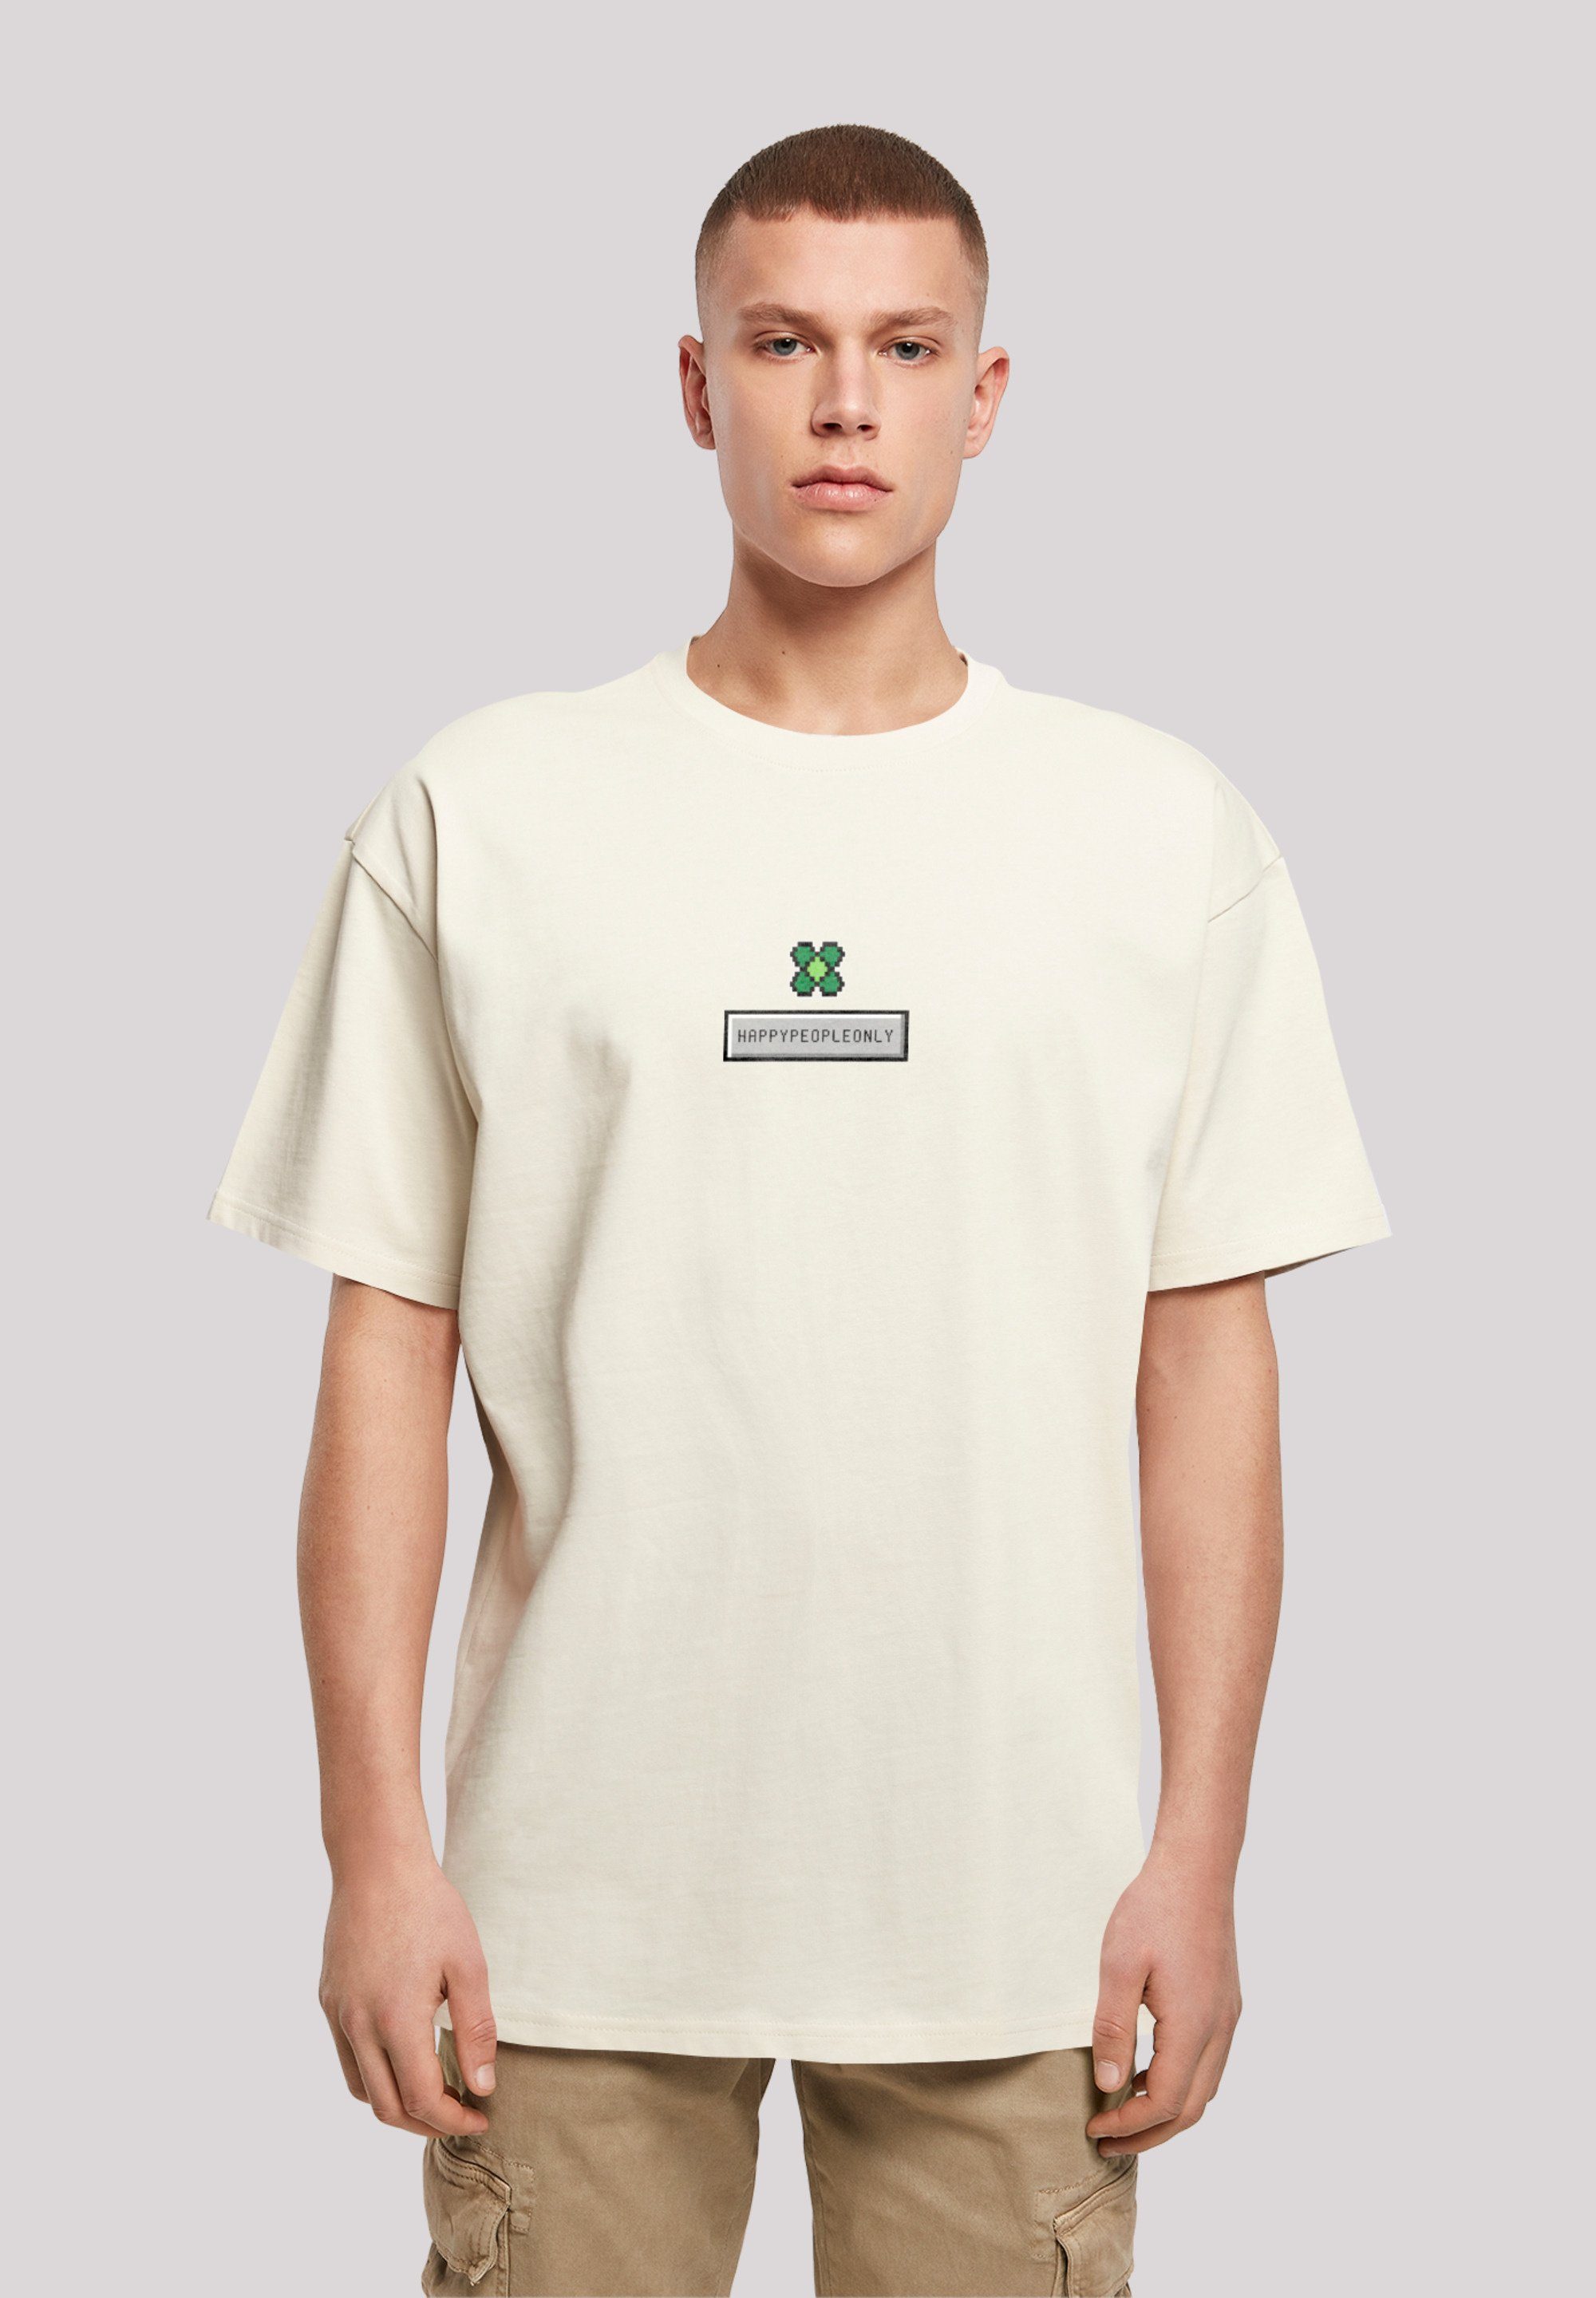 Pixel Silvester Print Year T-Shirt sand New Happy Kleeblatt F4NT4STIC